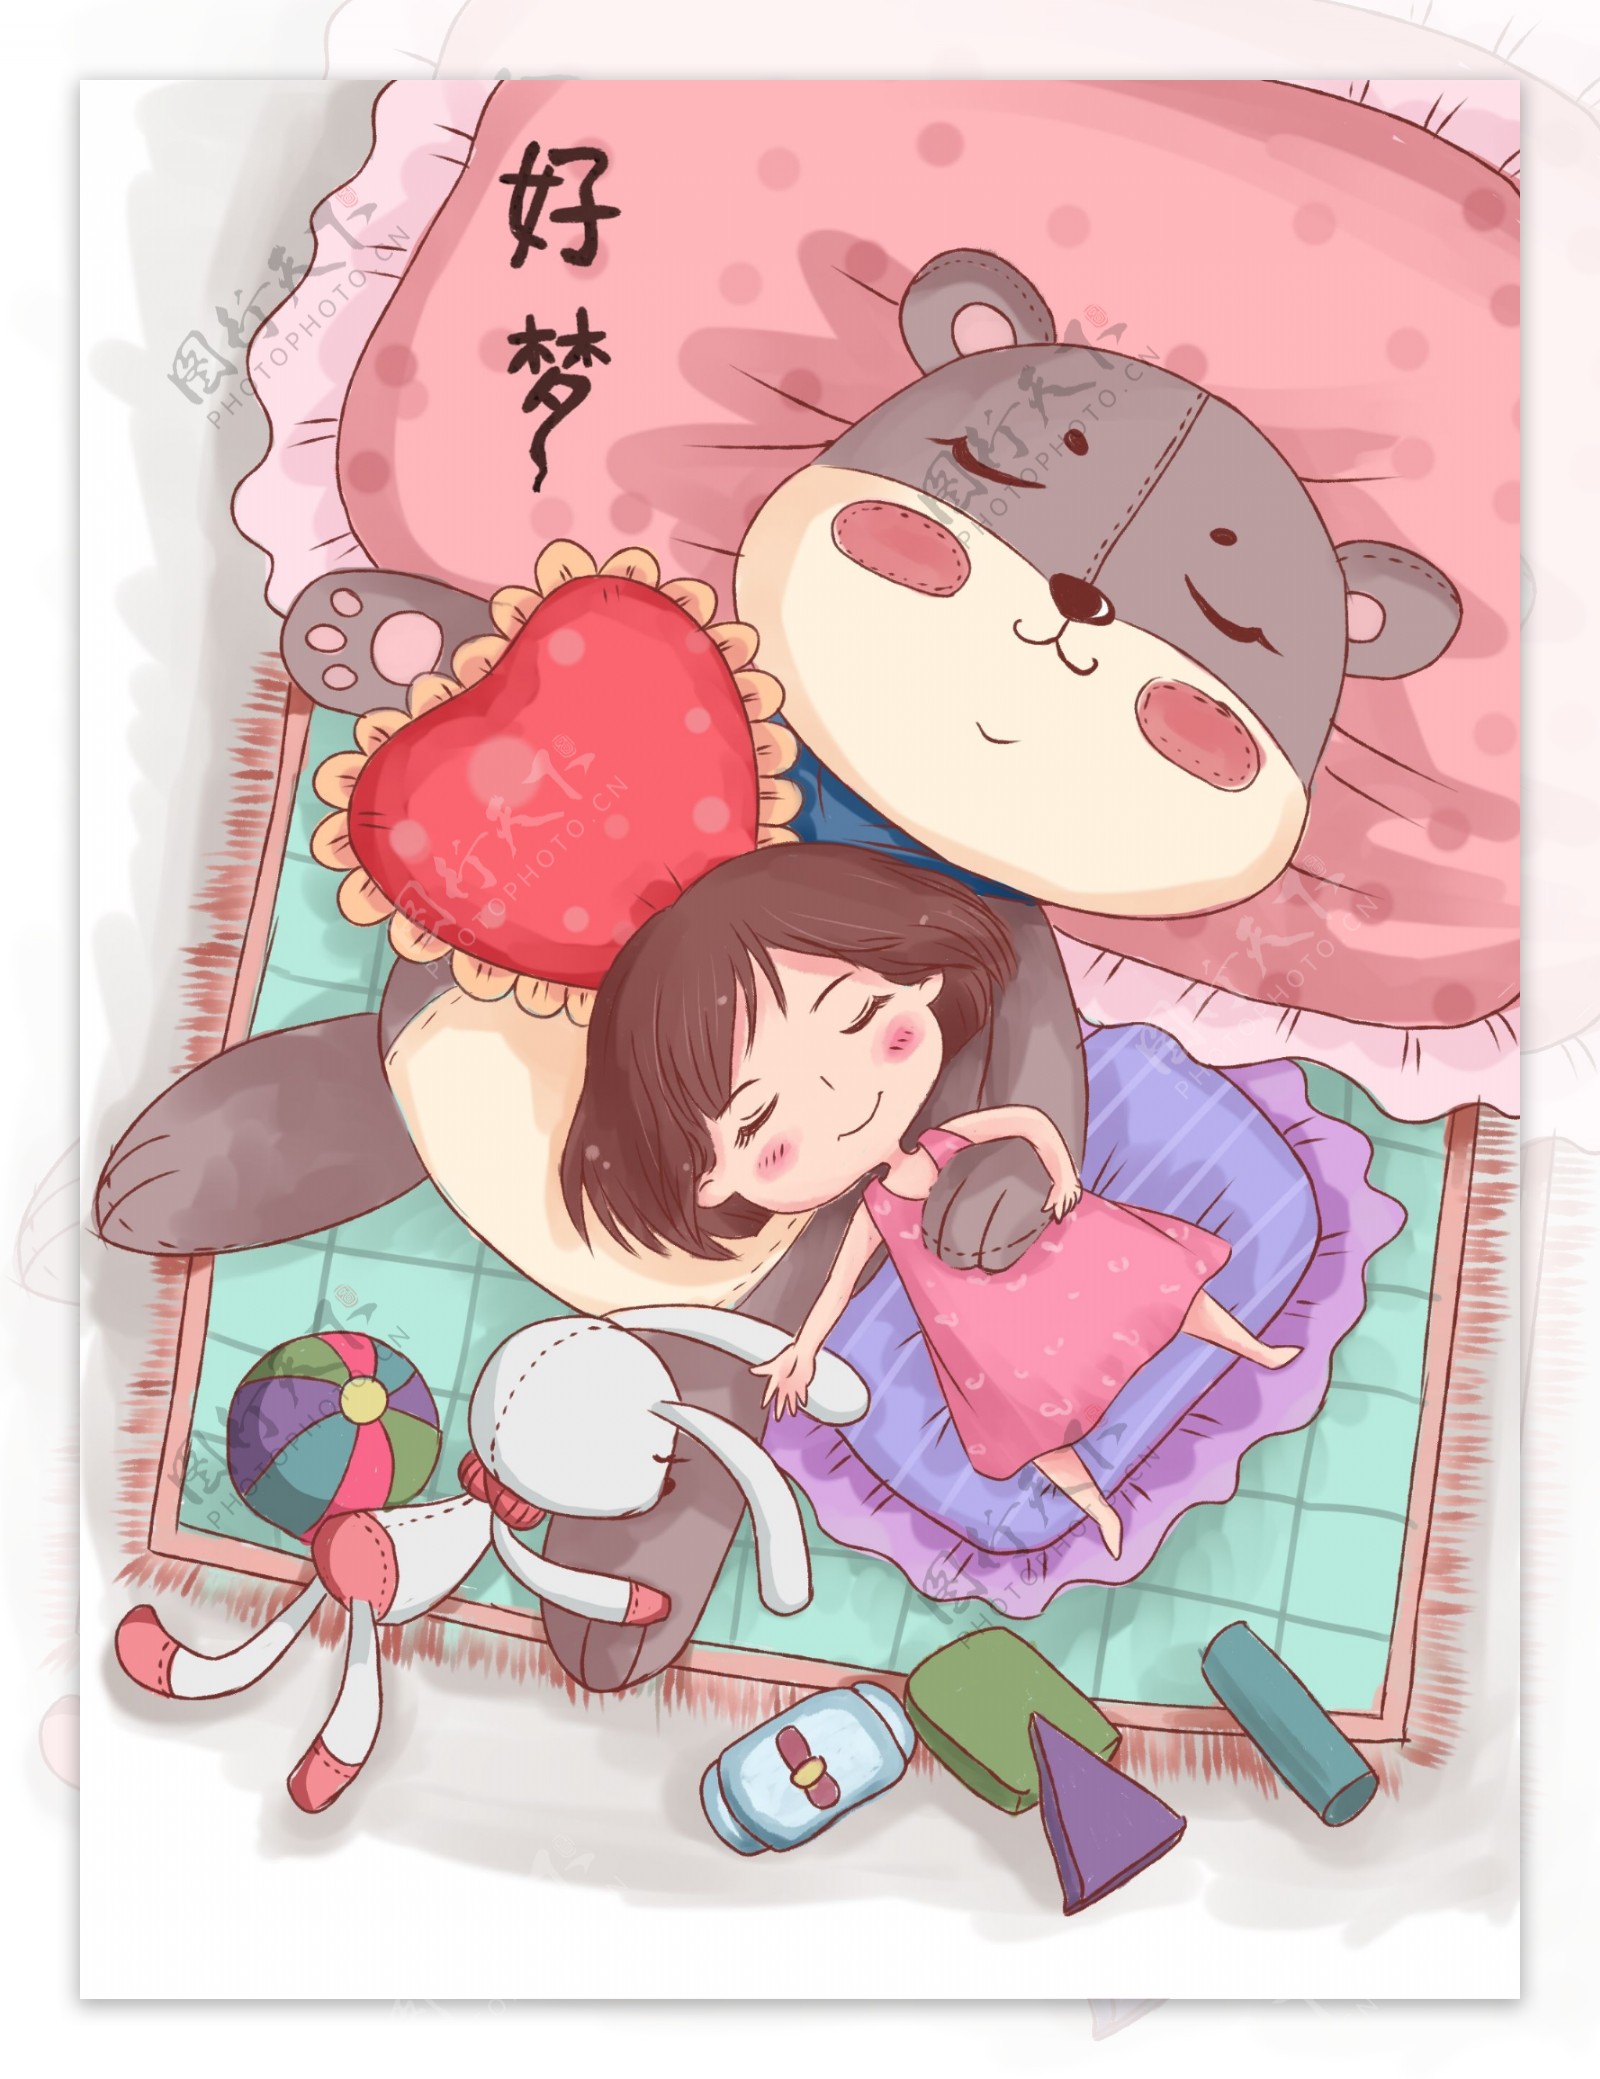 小清新卡通插画手绘女孩睡觉海报图片